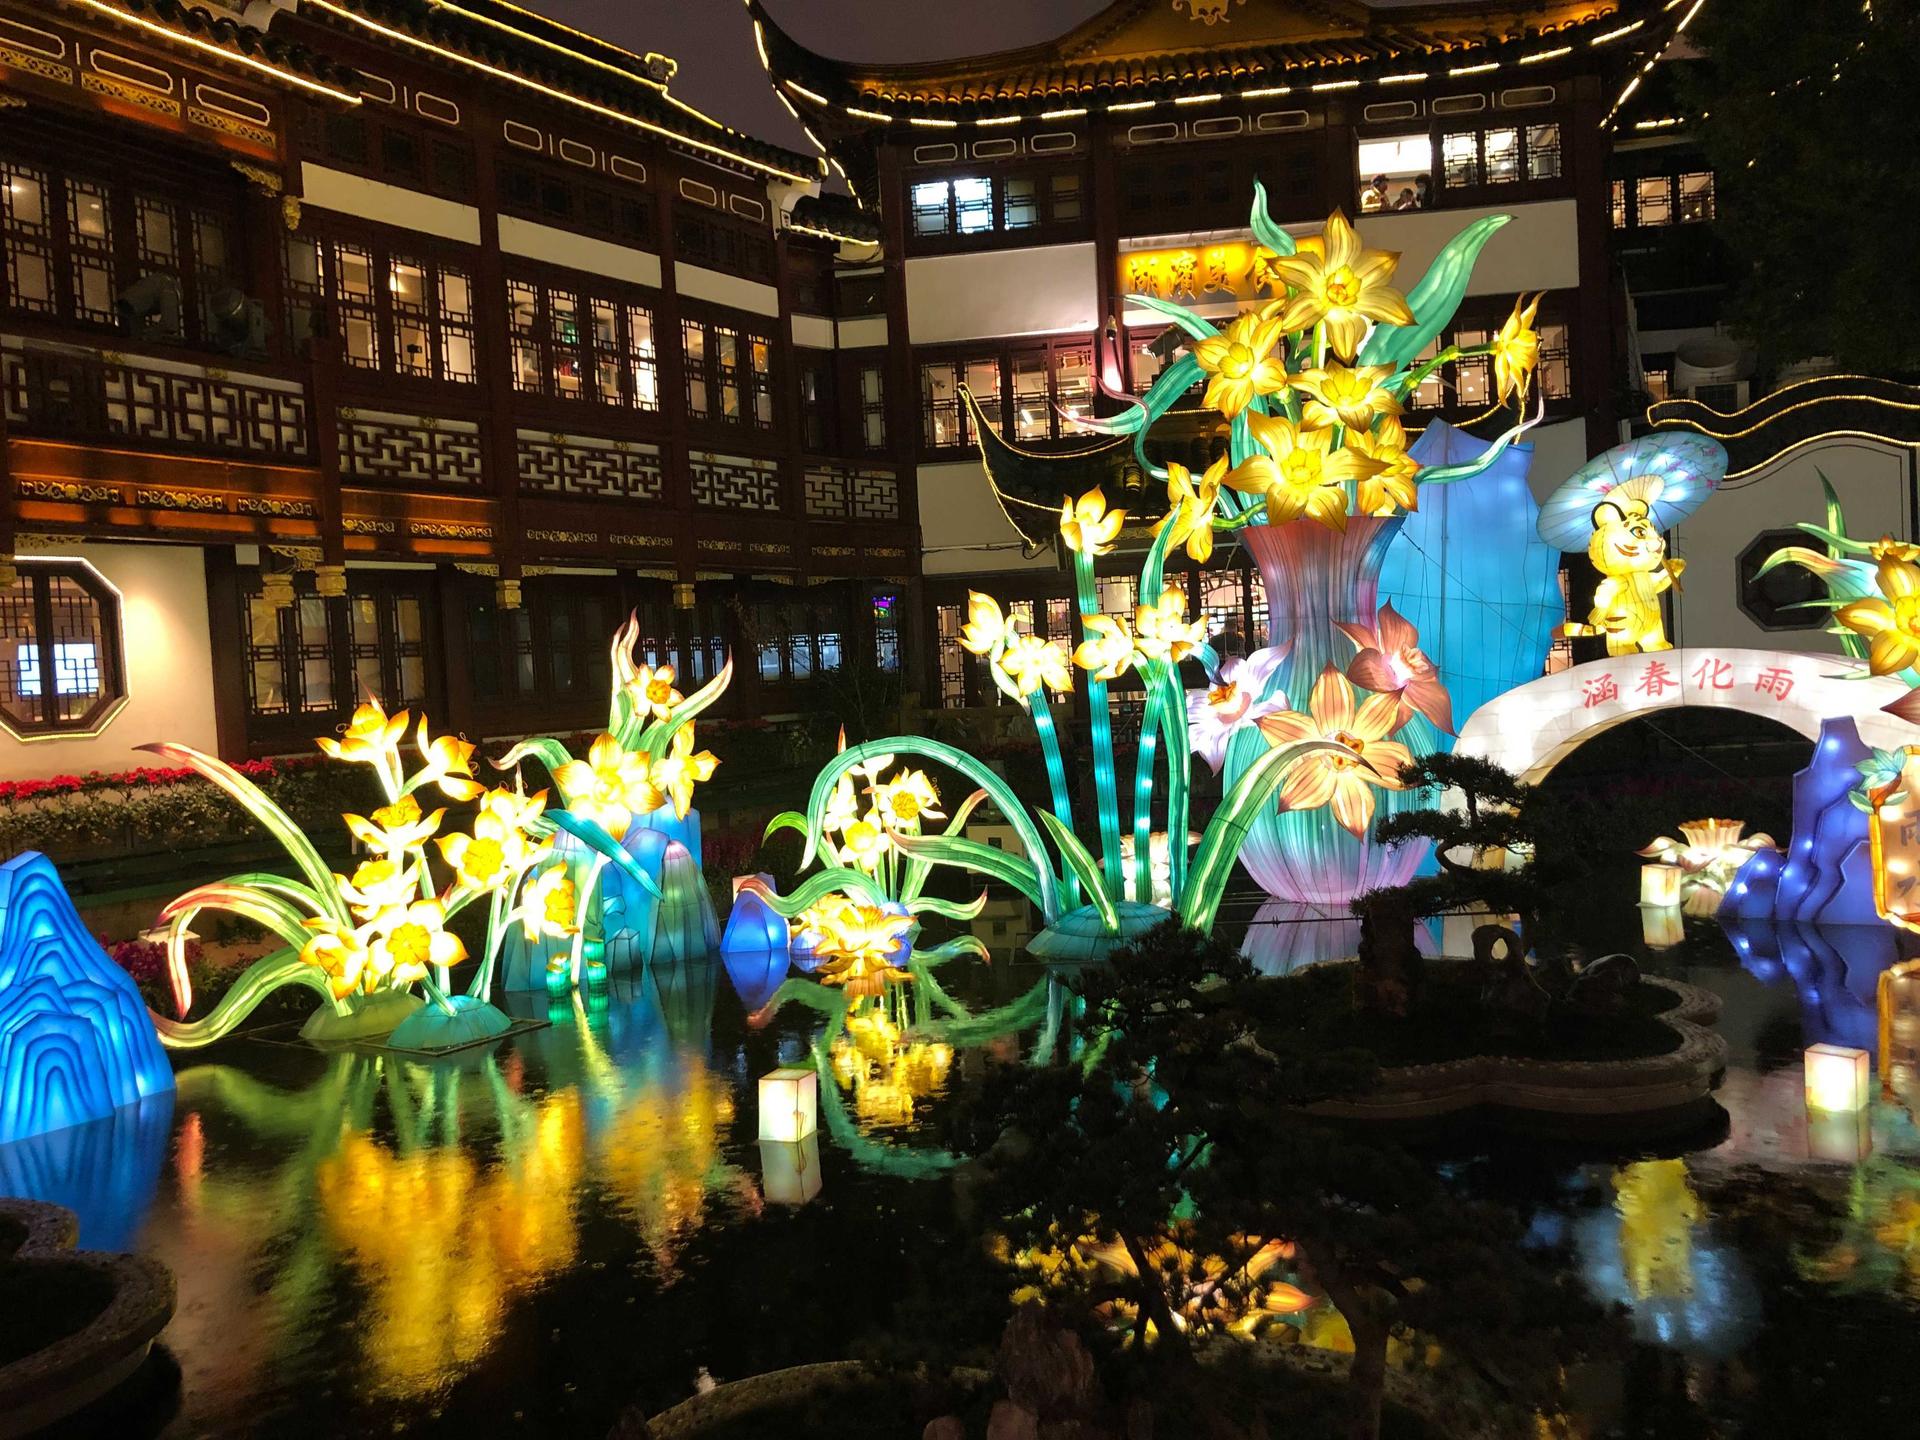 Lantern display at Yuyuan Garden, Shanghai.